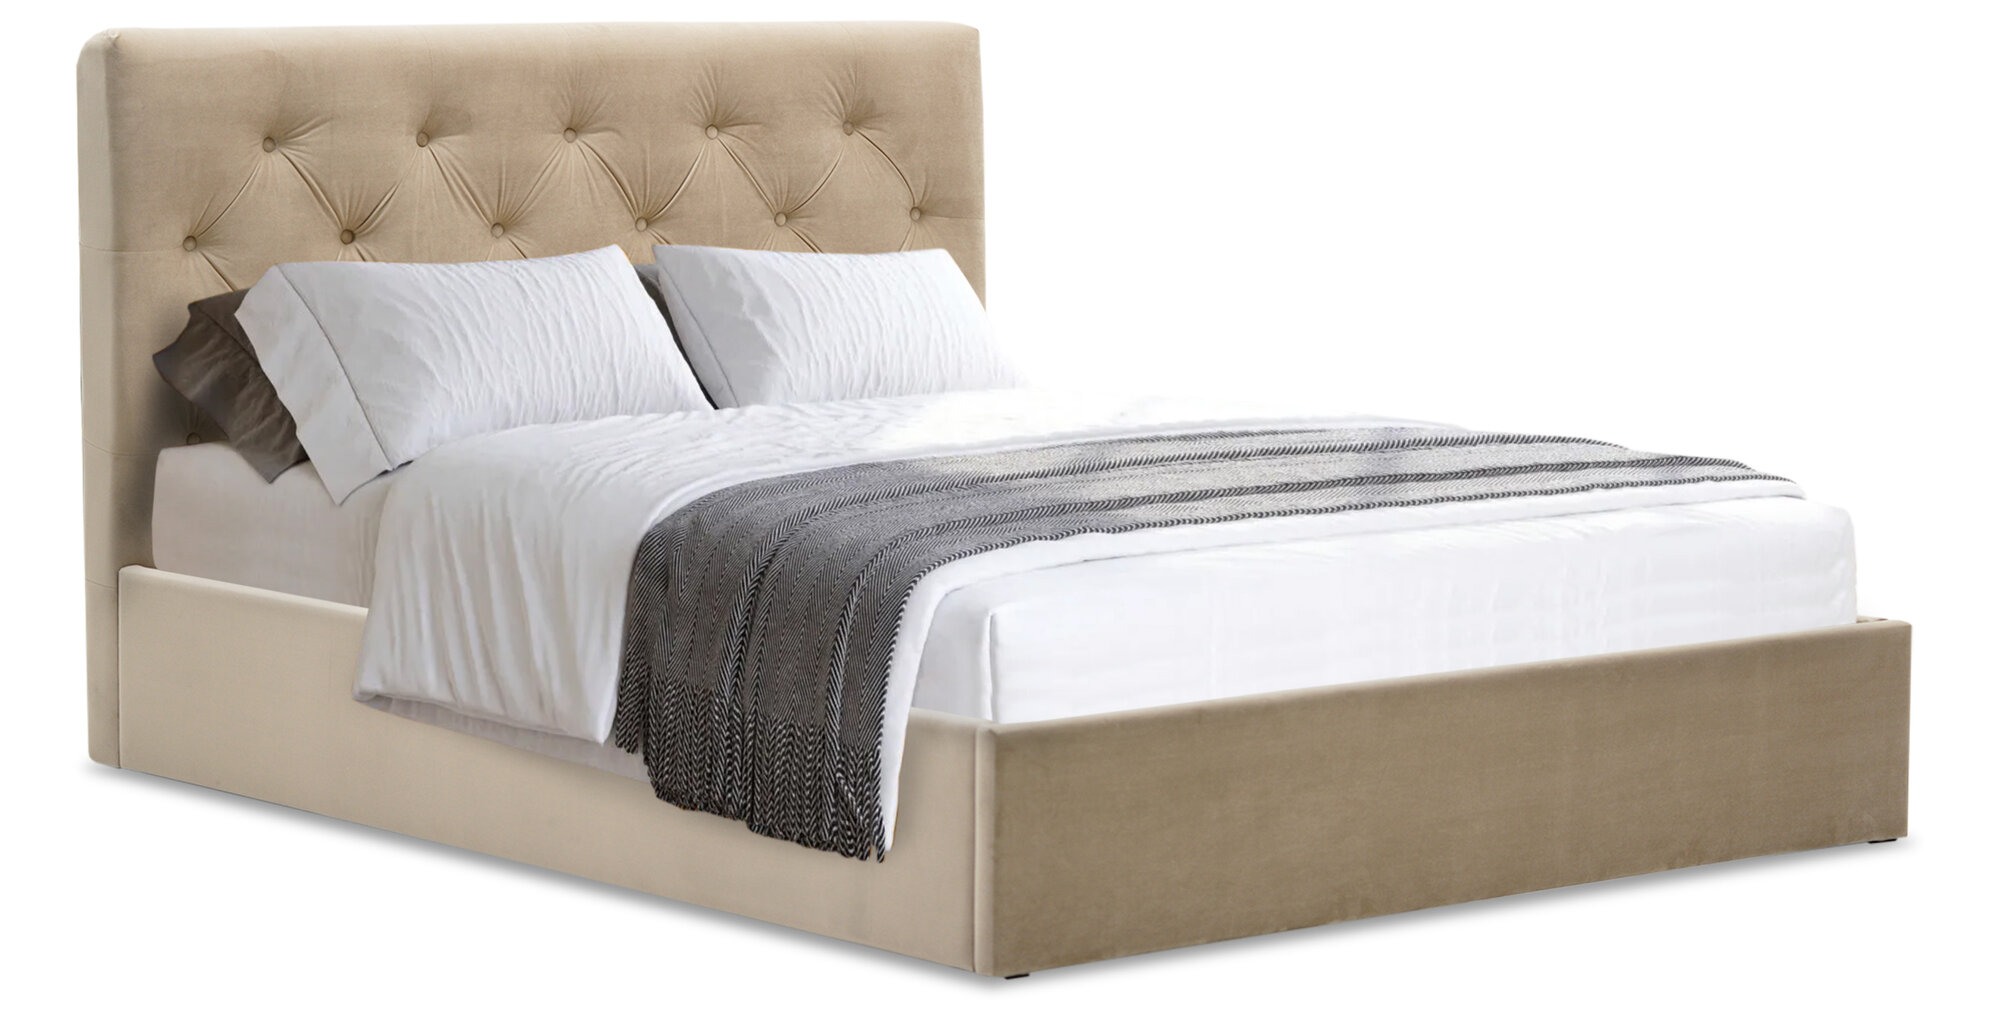 Двуспальная кровать Беллини 160х200, с подъемным механизмом, California 102